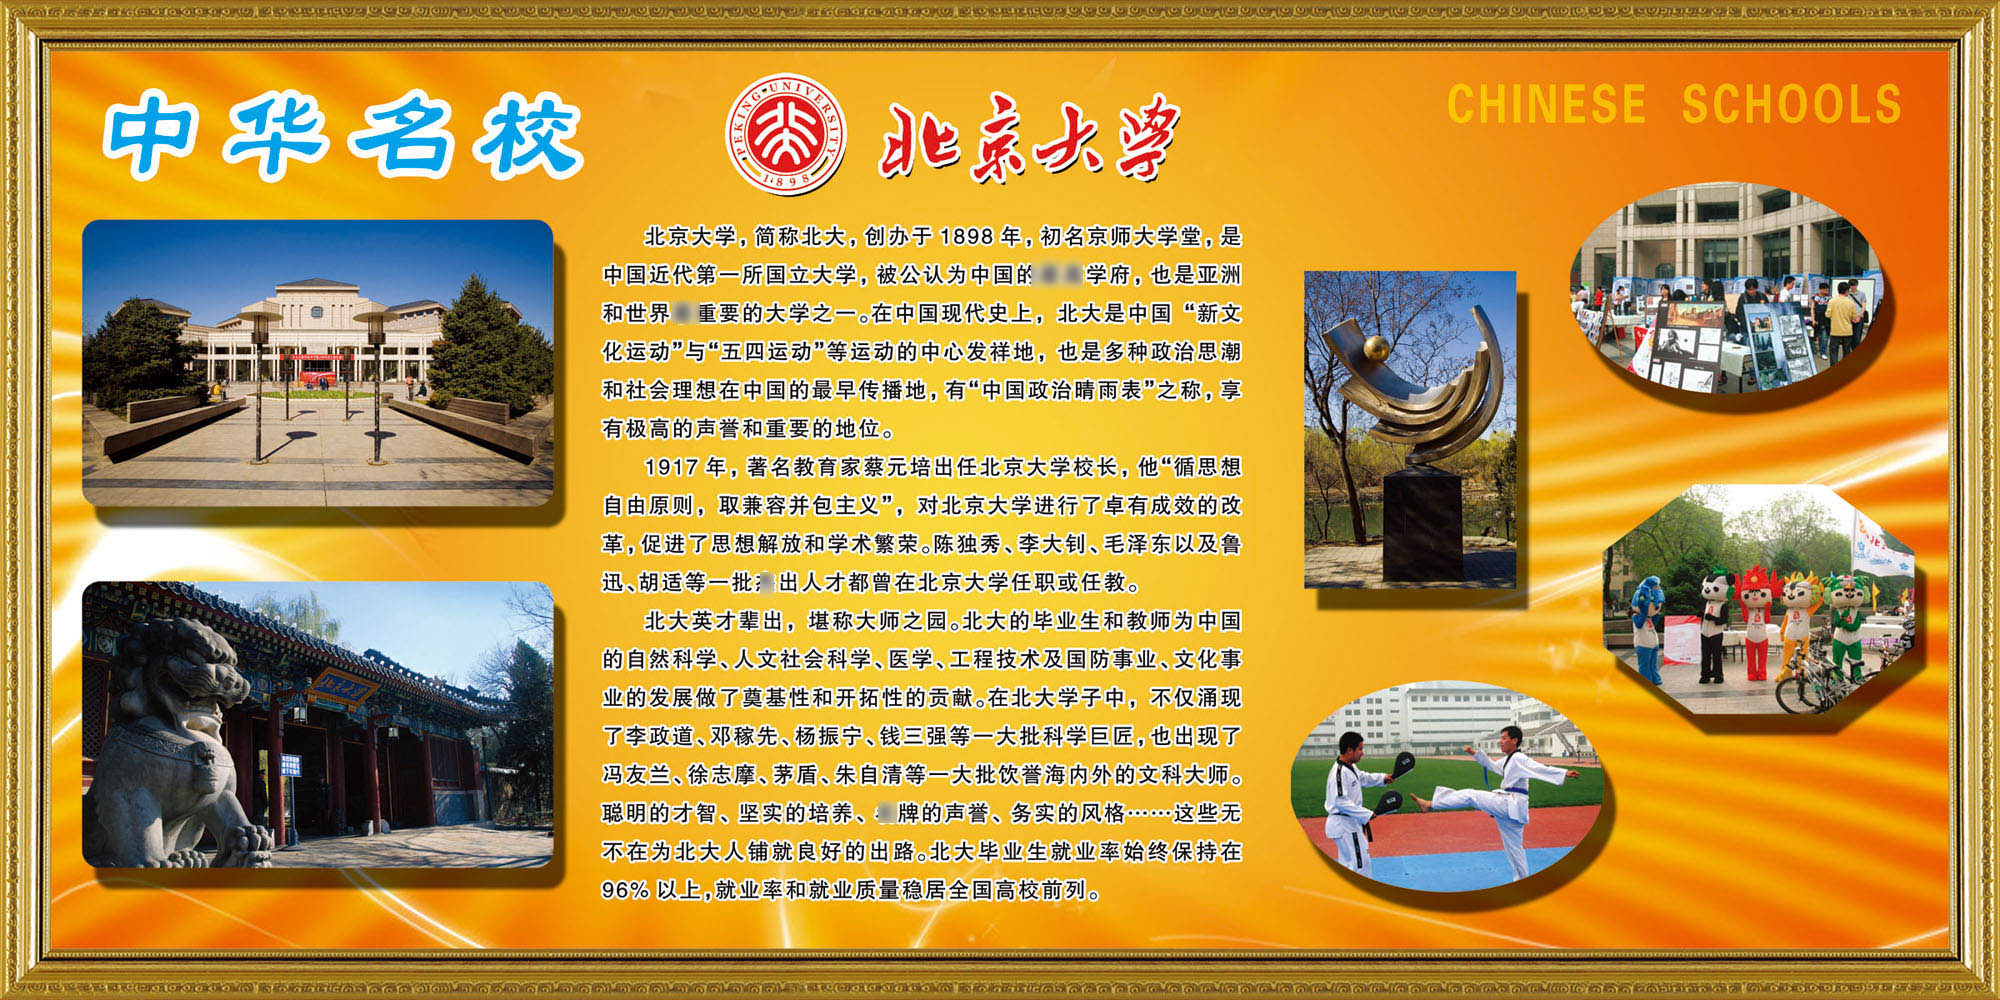 695-1海报印制展板喷绘写真贴纸011名校 北京大学简介介绍挂图画